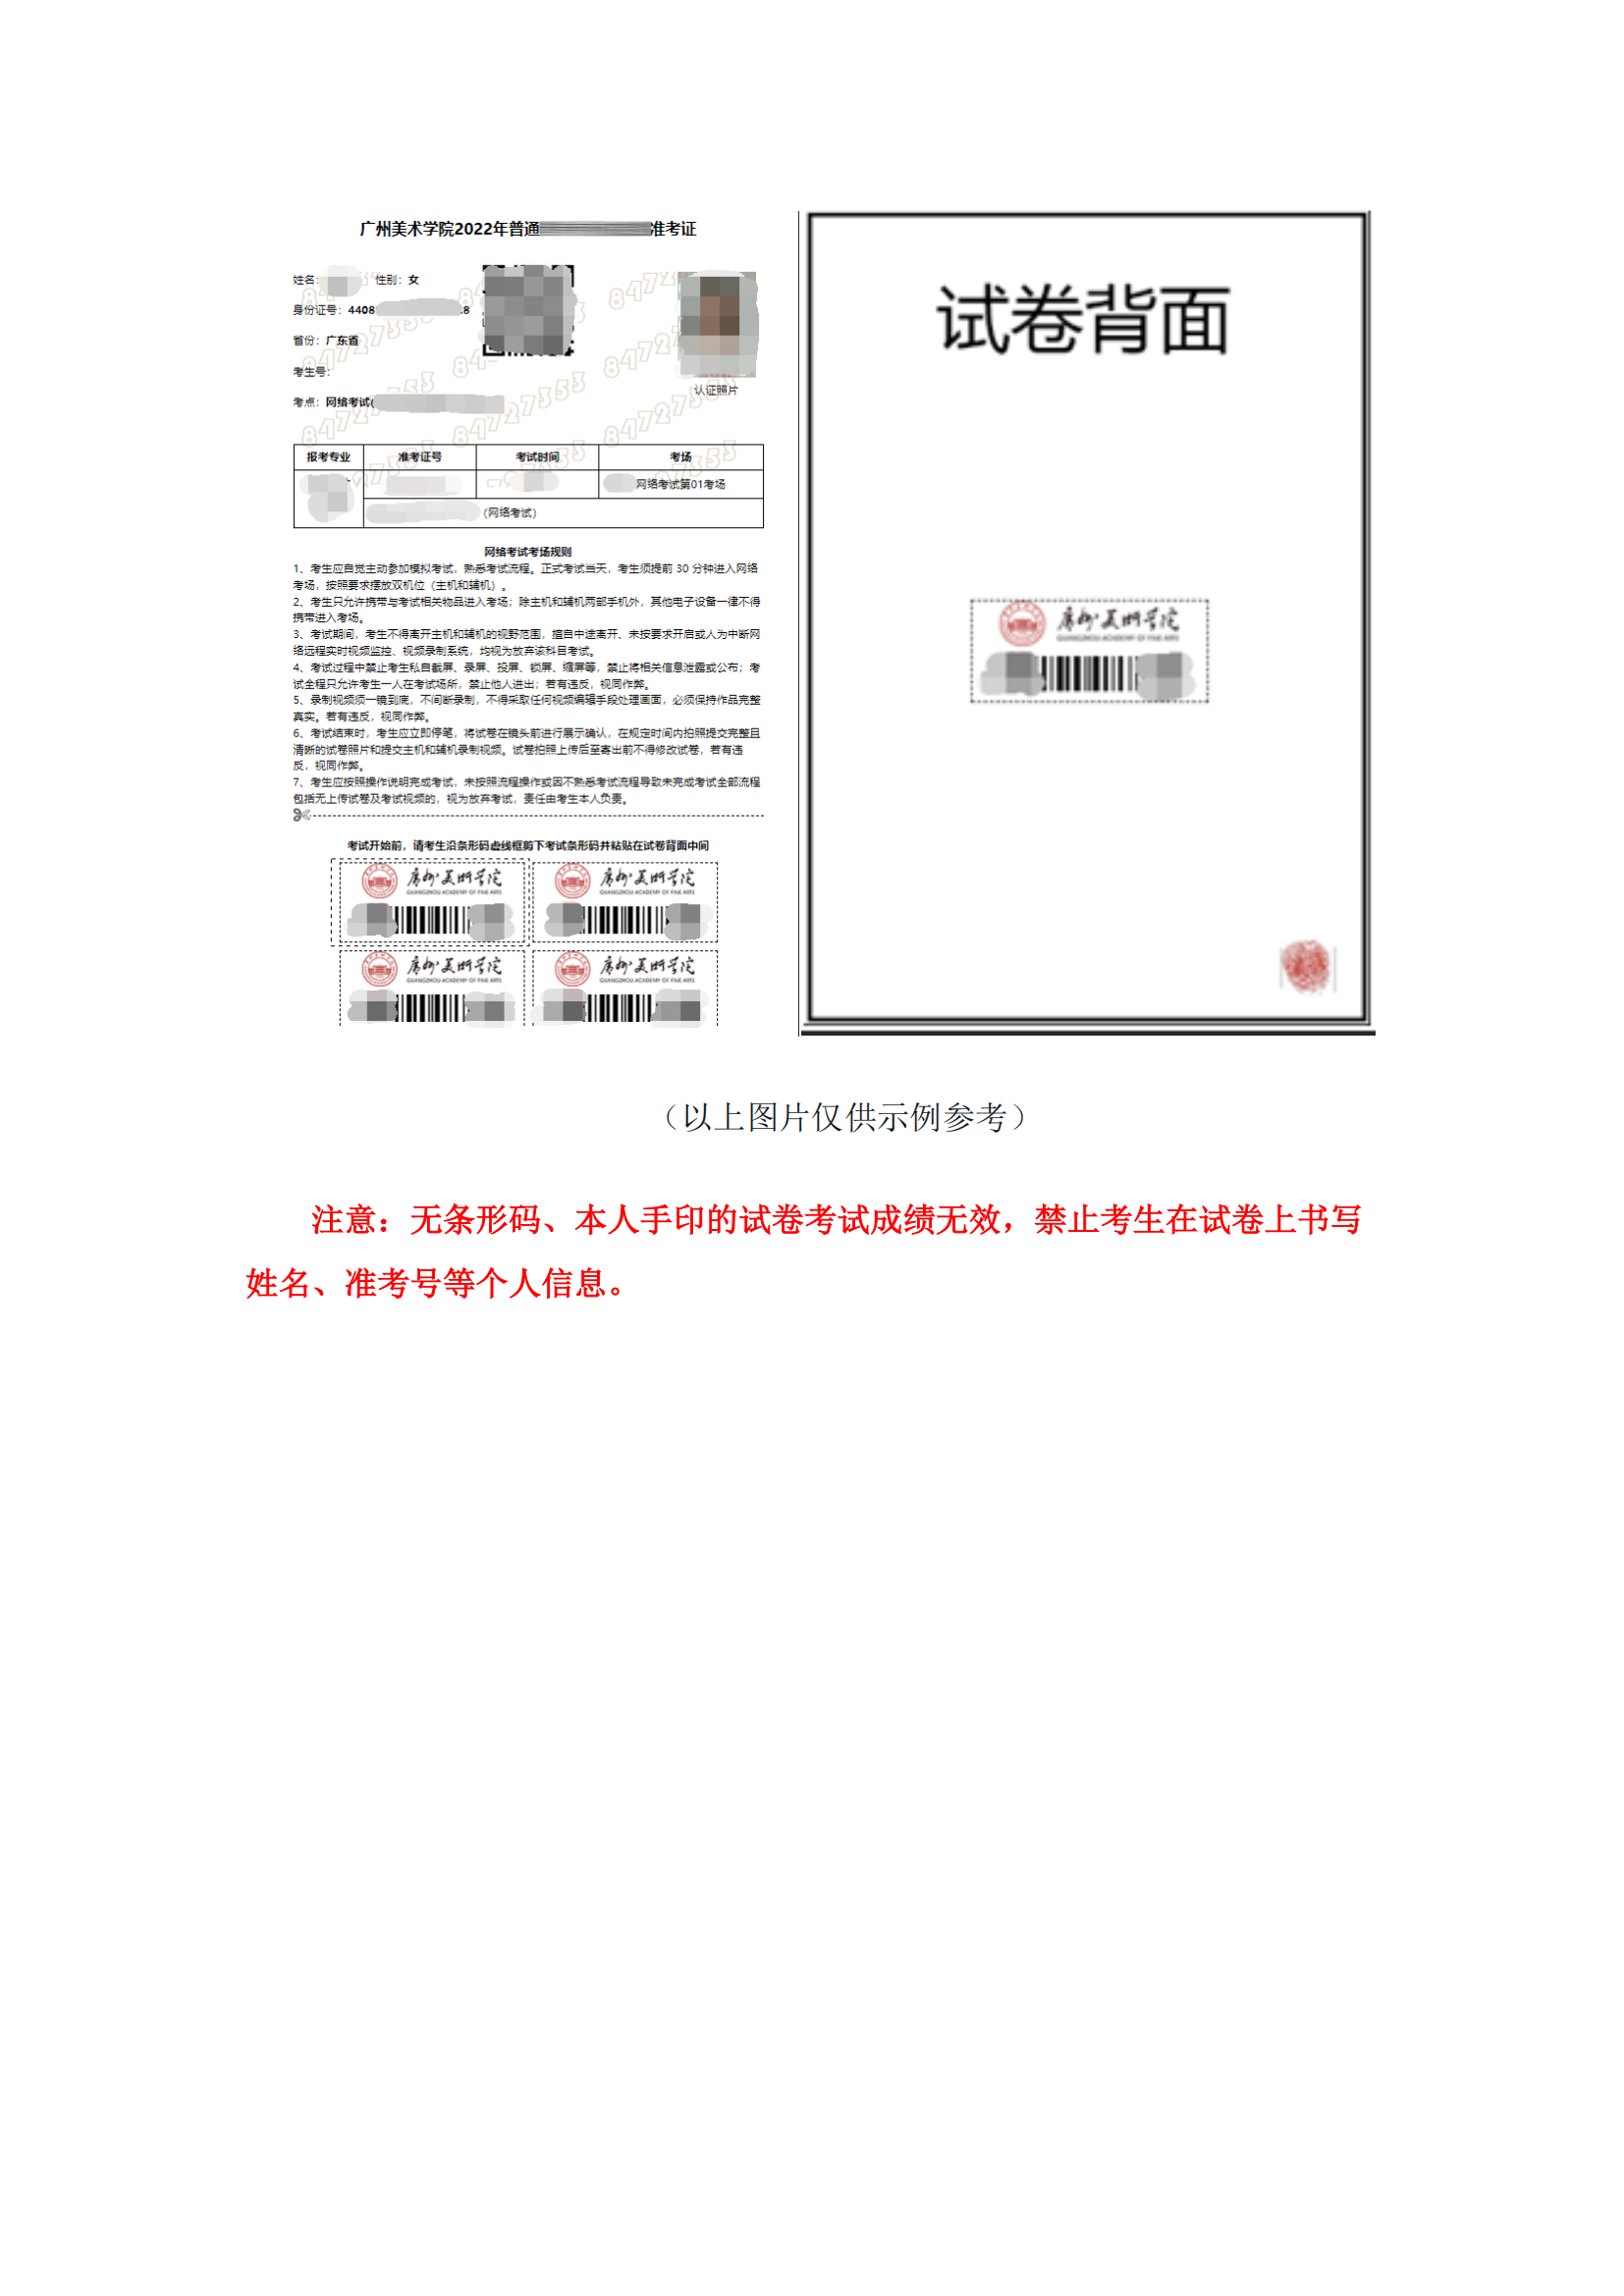 附件1：广州美术学院艺术升APP网络考试操作说明_07.png